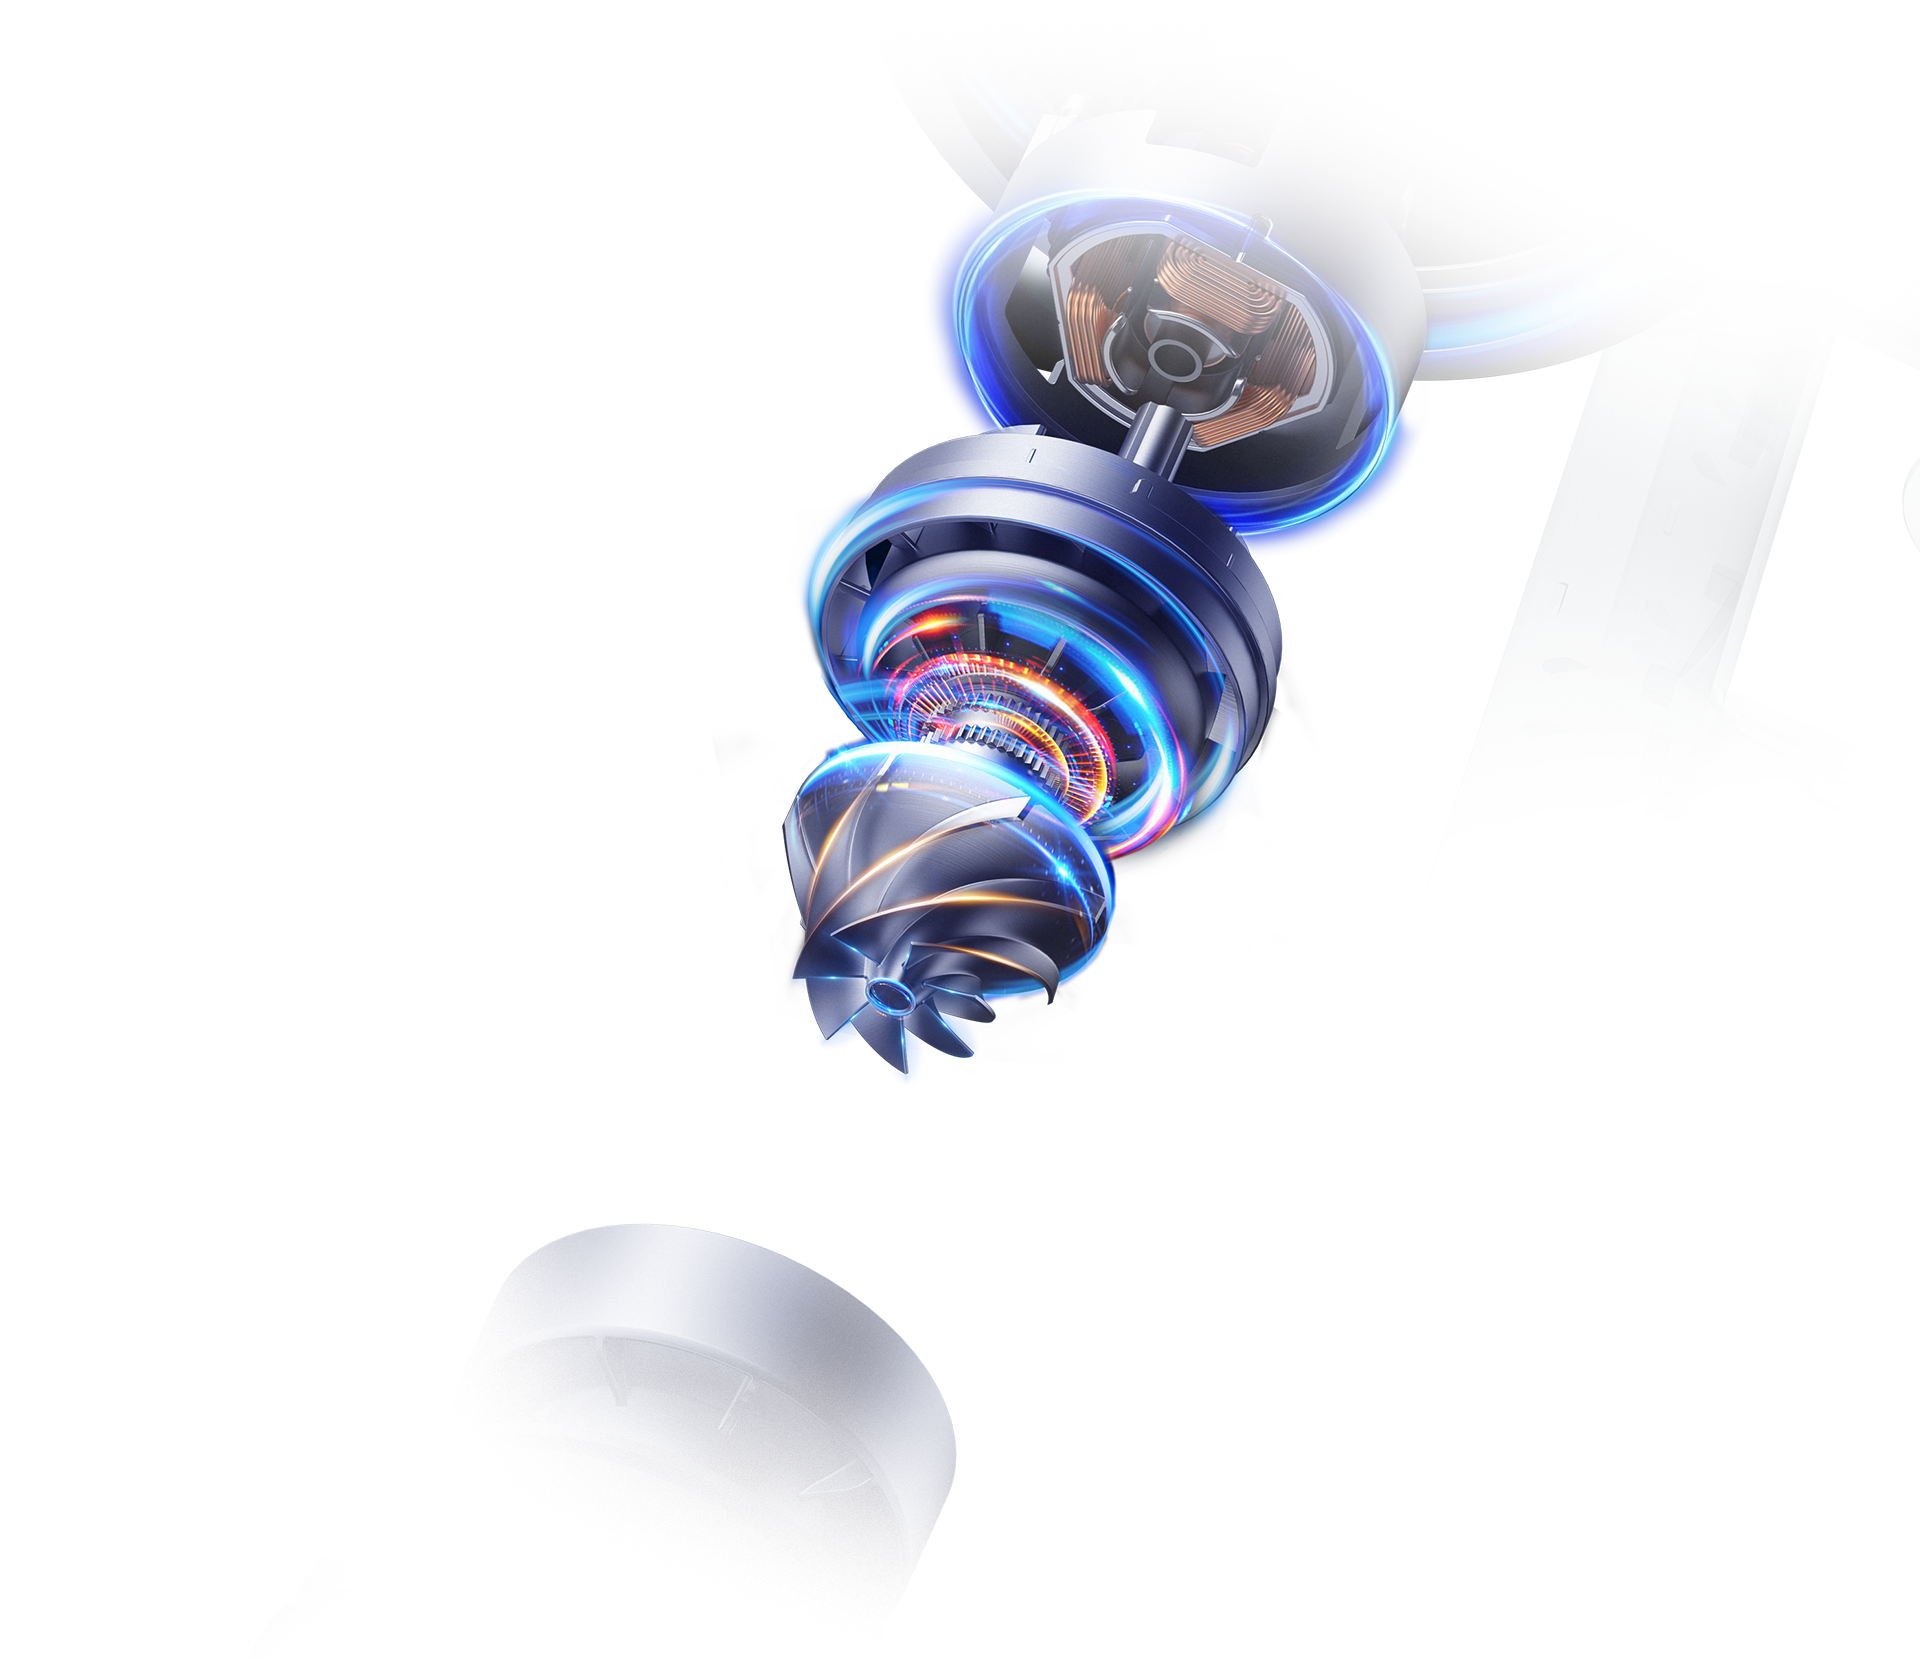 ניקוי אלחוטי עם יניקה חזקה ומנוע ללא מברשות במהירות גבוהה.